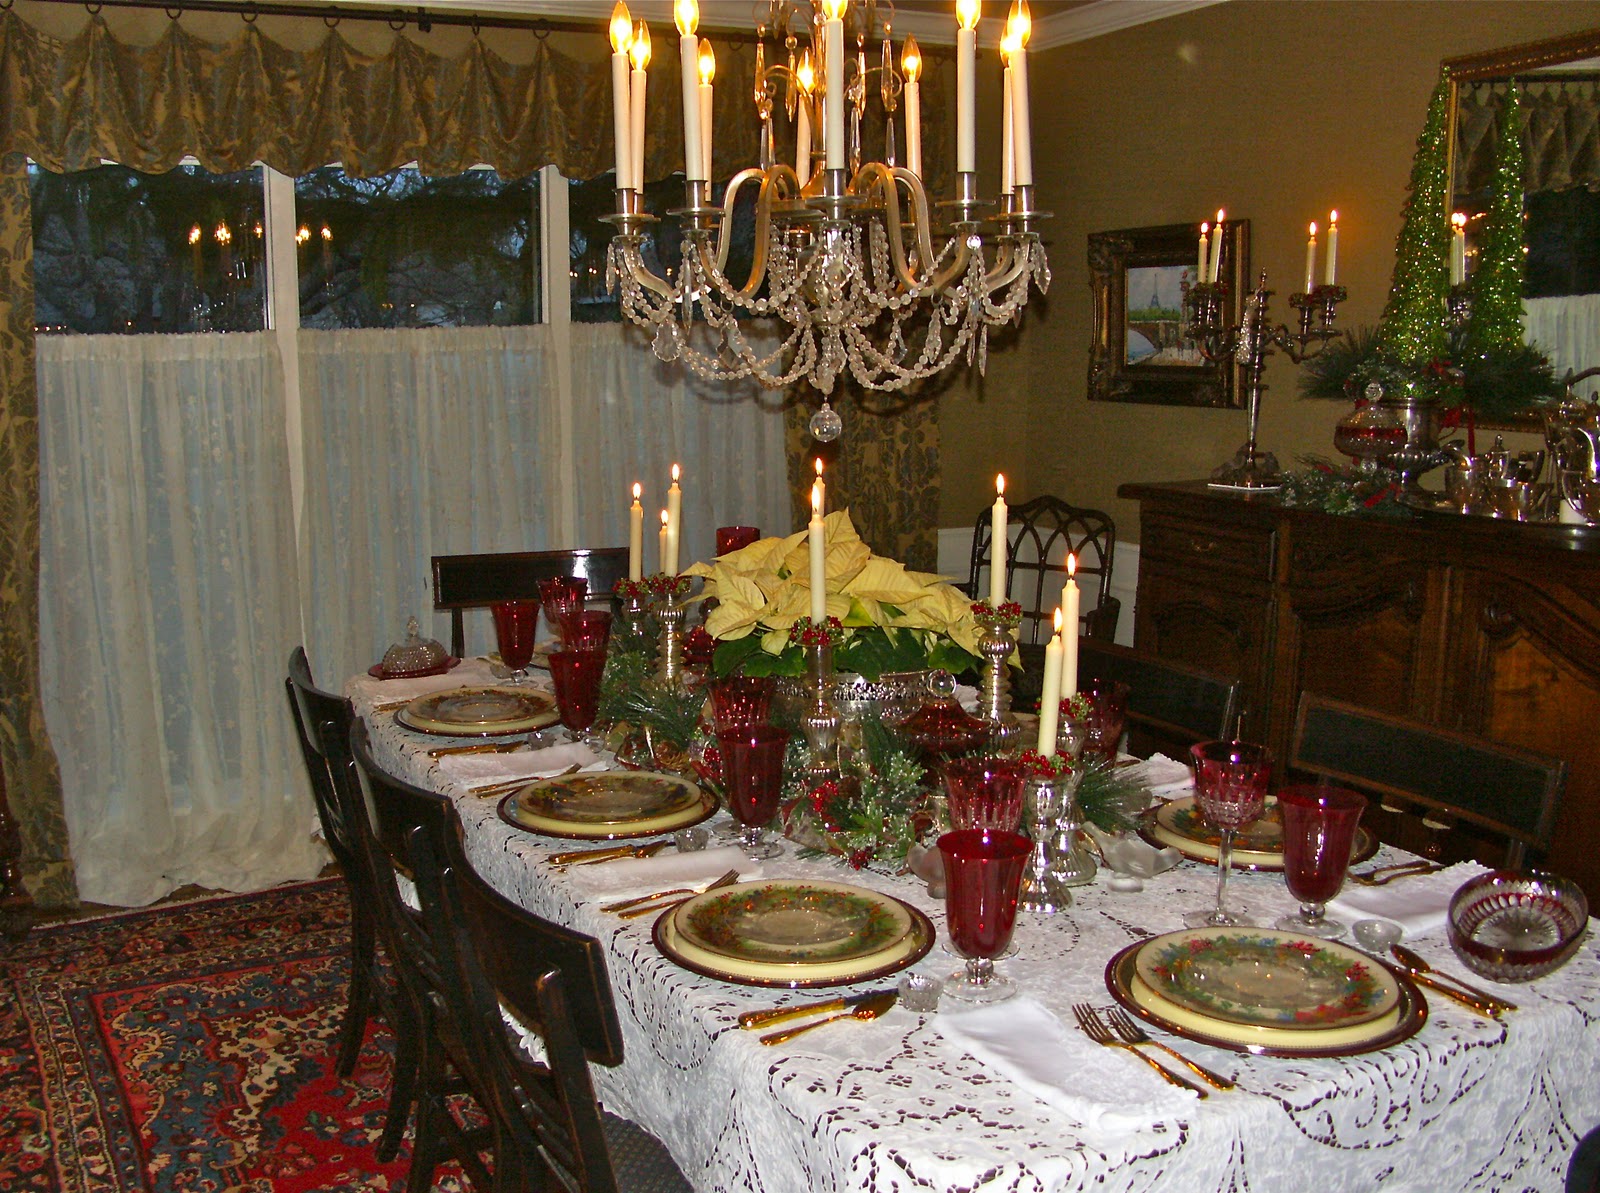 Christmas Dinner, 2010 - Entertaining Women